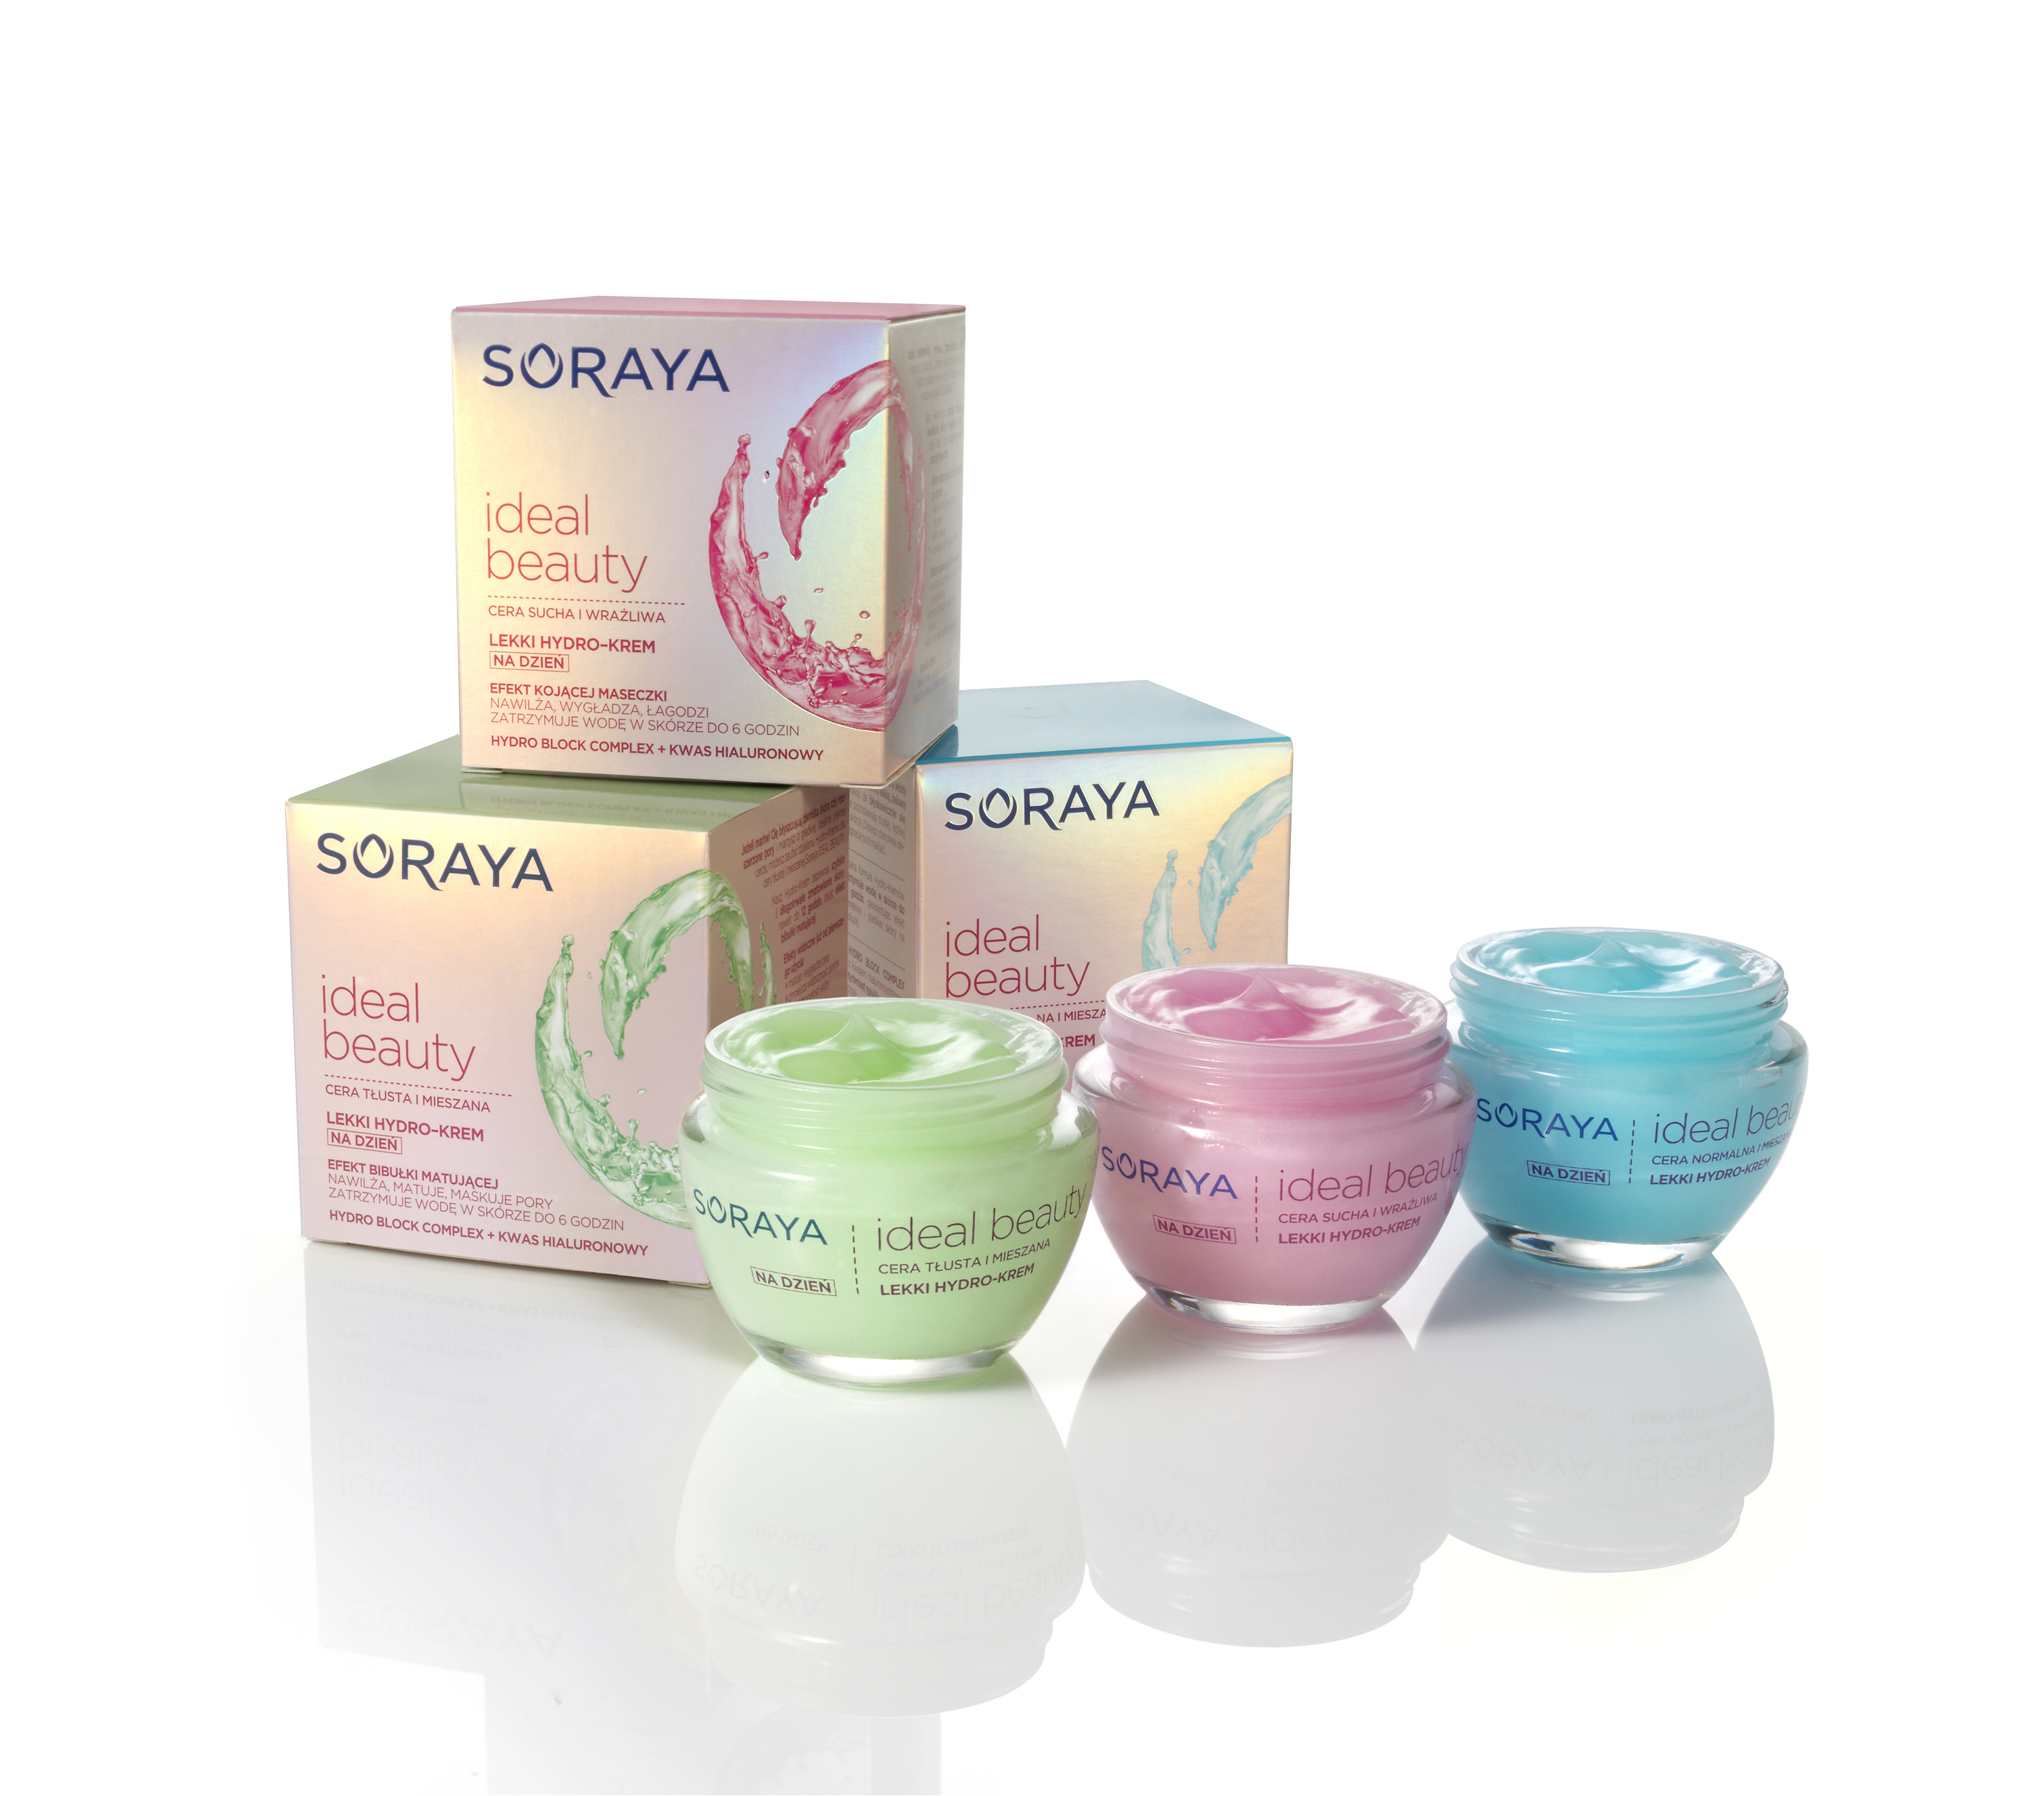 Soraya Ideal Beauty: krem do twarzy, skład, cena - Uroda